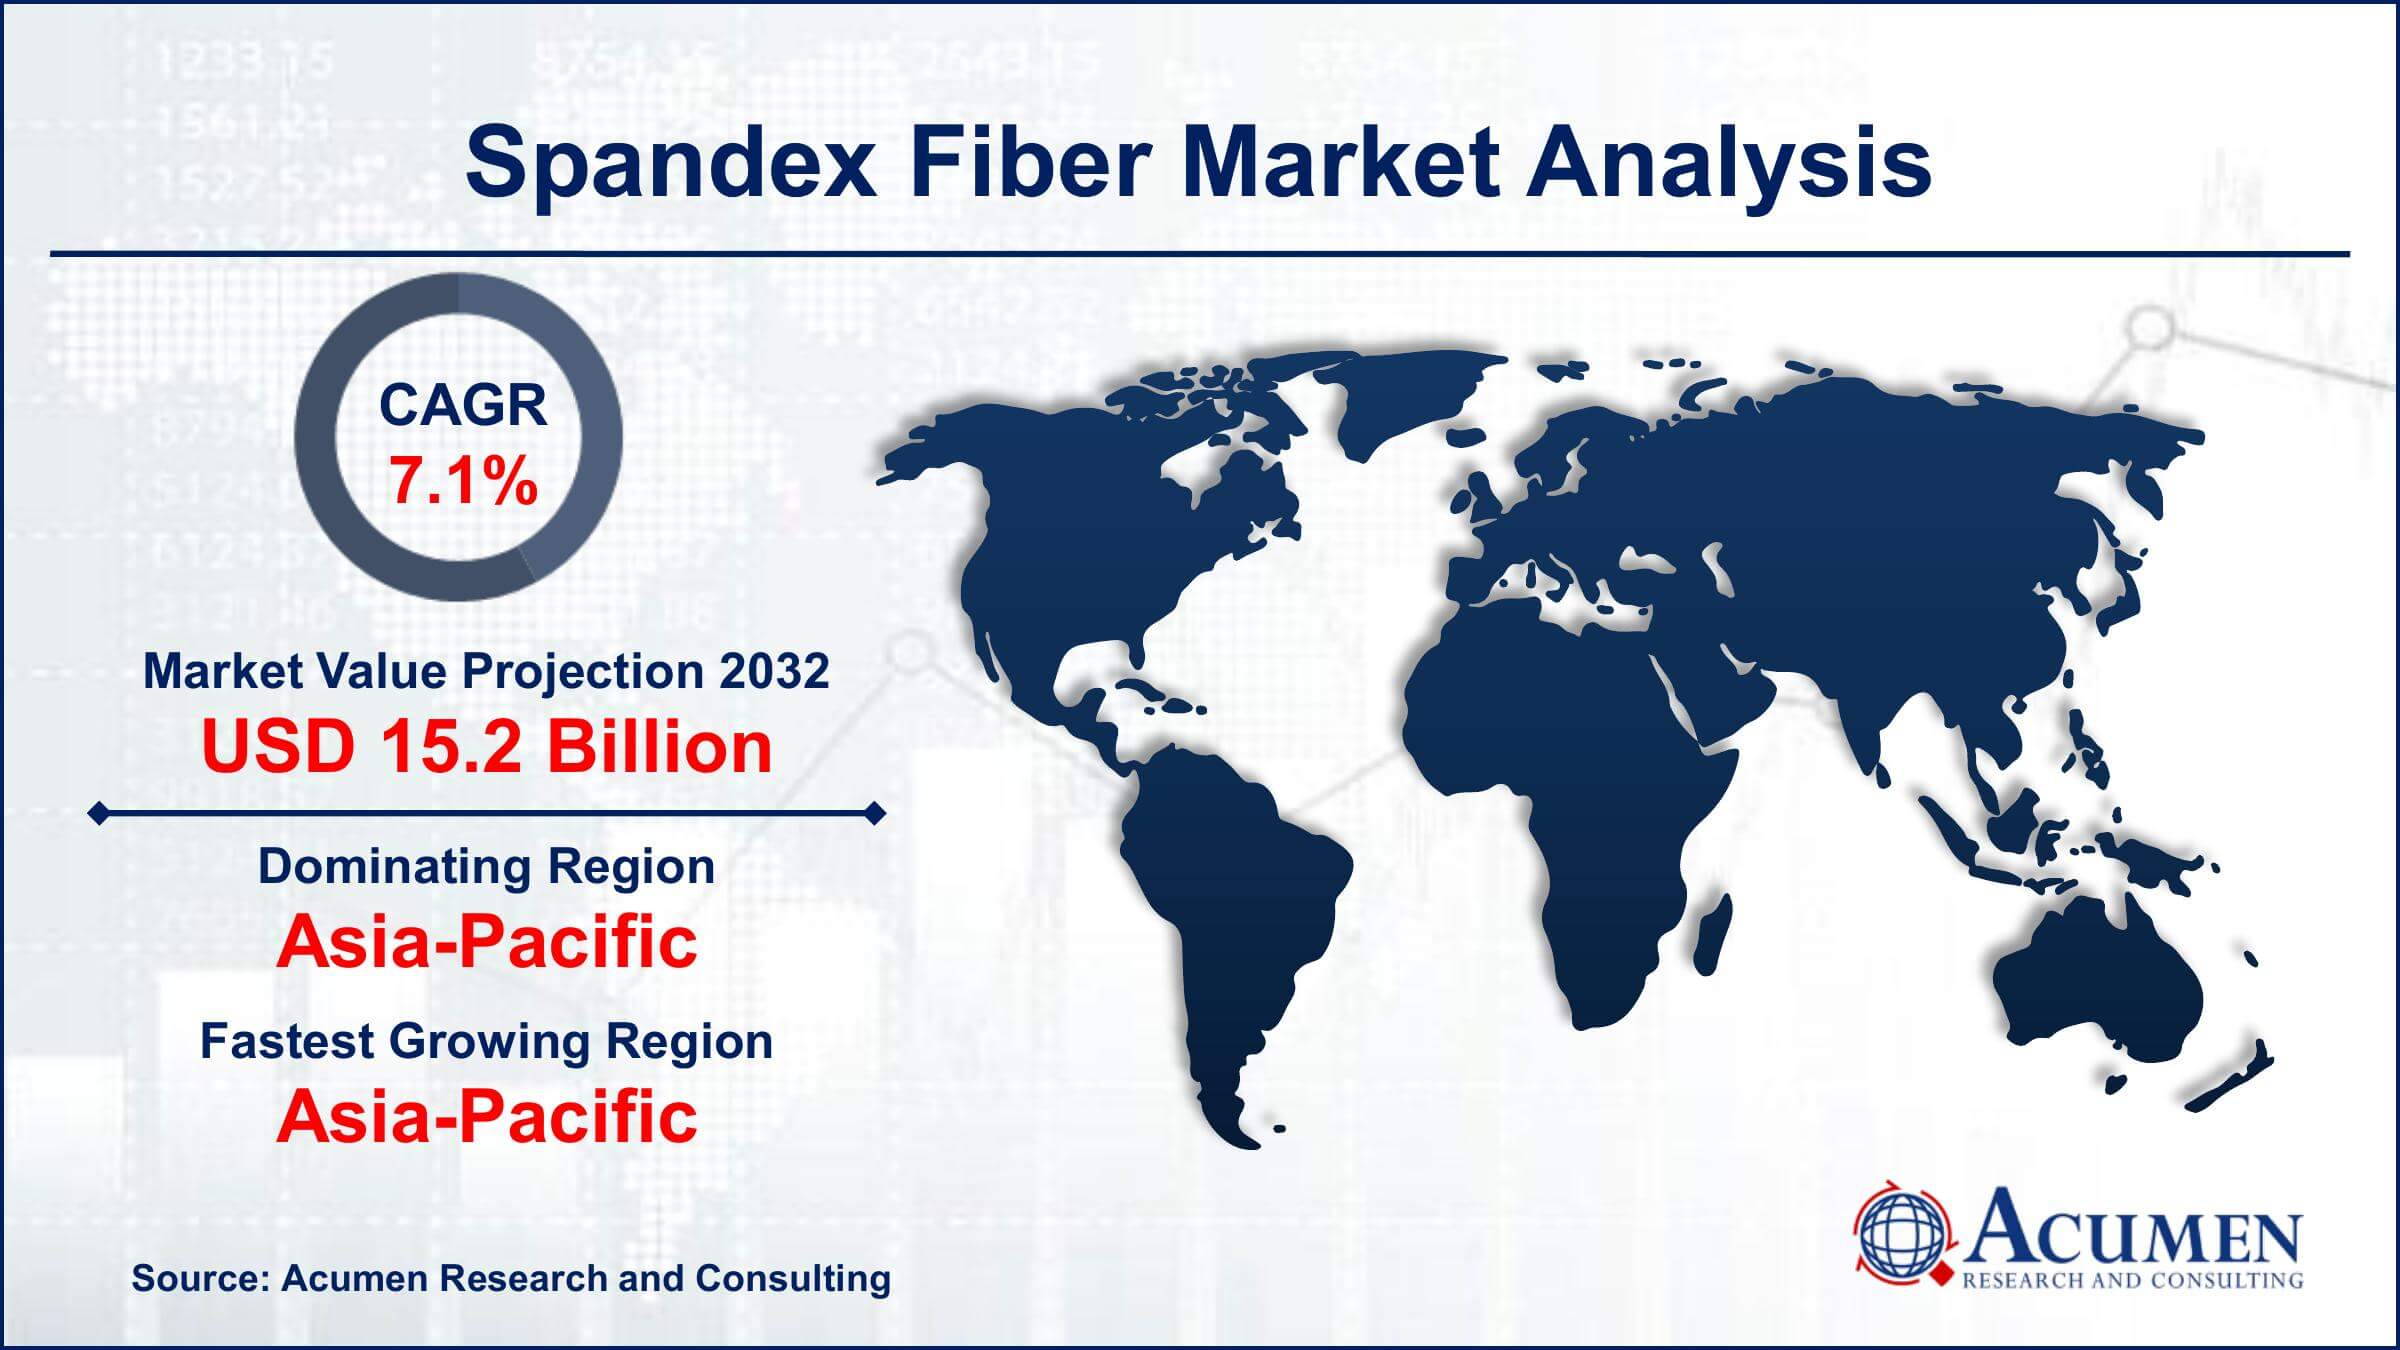 Global Spandex Fiber Market Trends